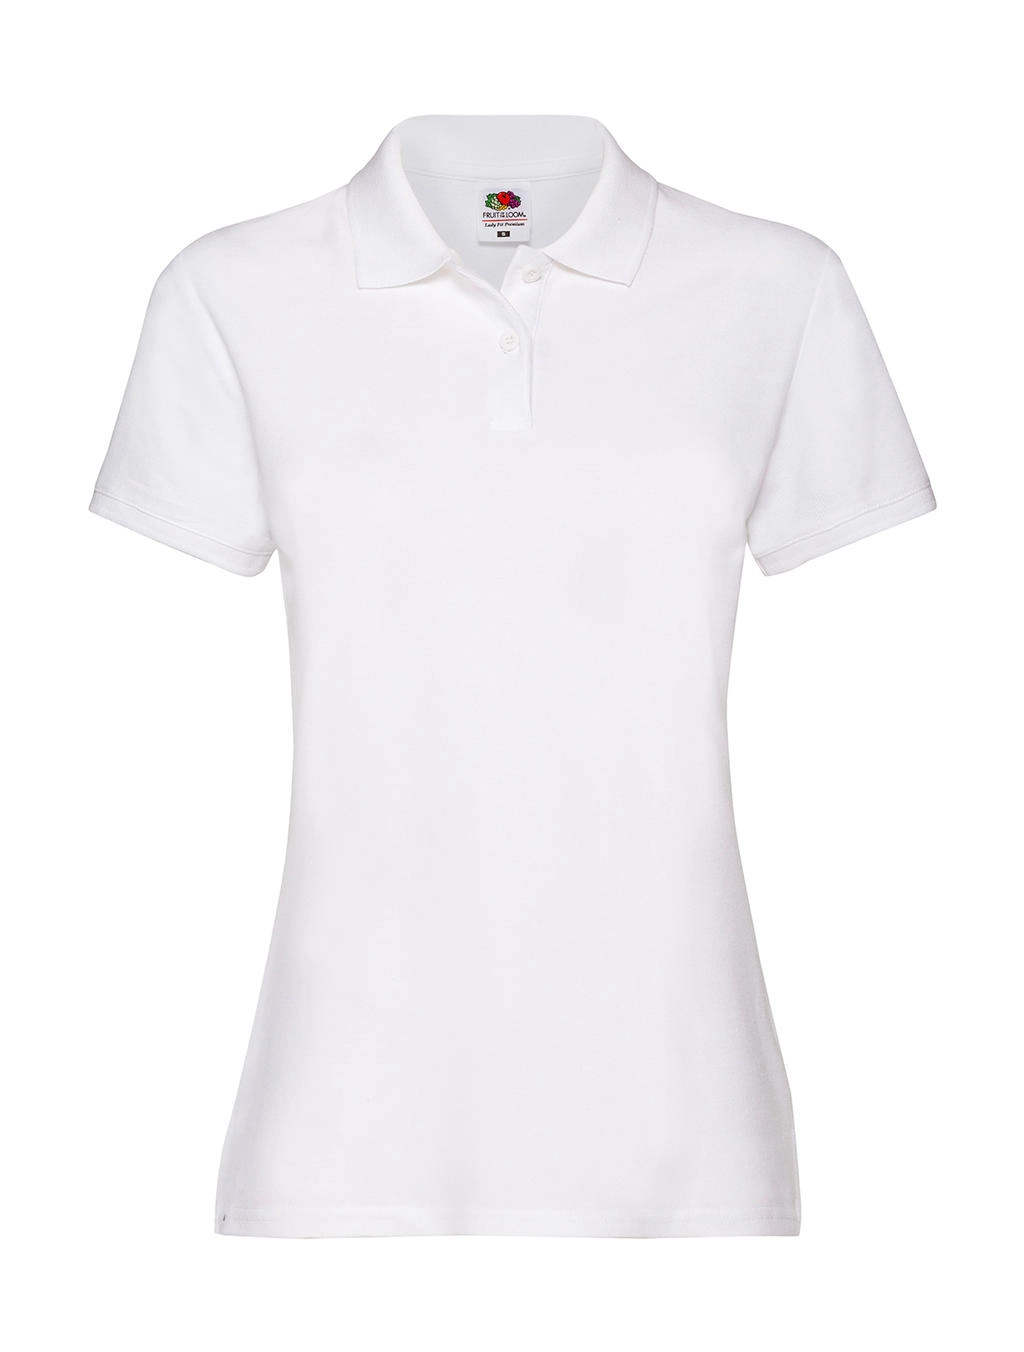 Ladies` Premium Polo zum Besticken und Bedrucken in der Farbe White mit Ihren Logo, Schriftzug oder Motiv.